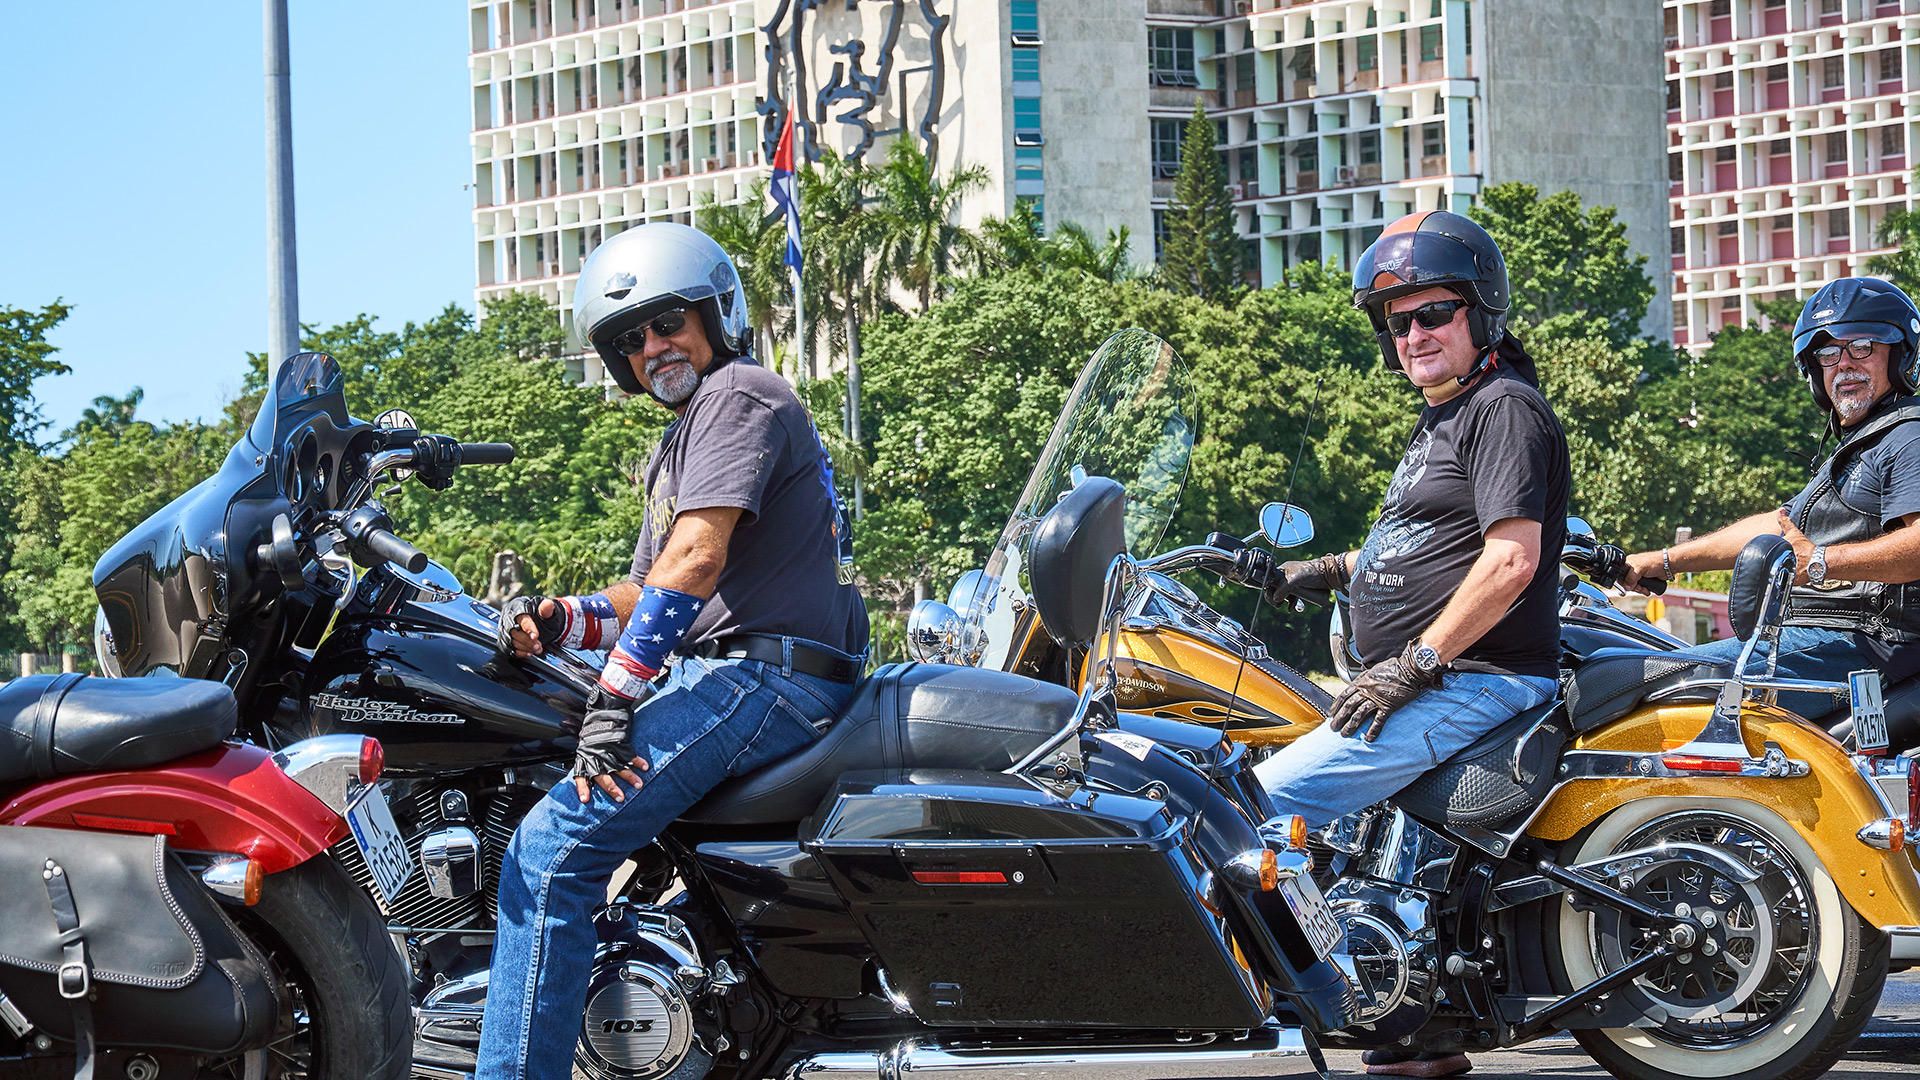 Riding a motorcycle through Cuba